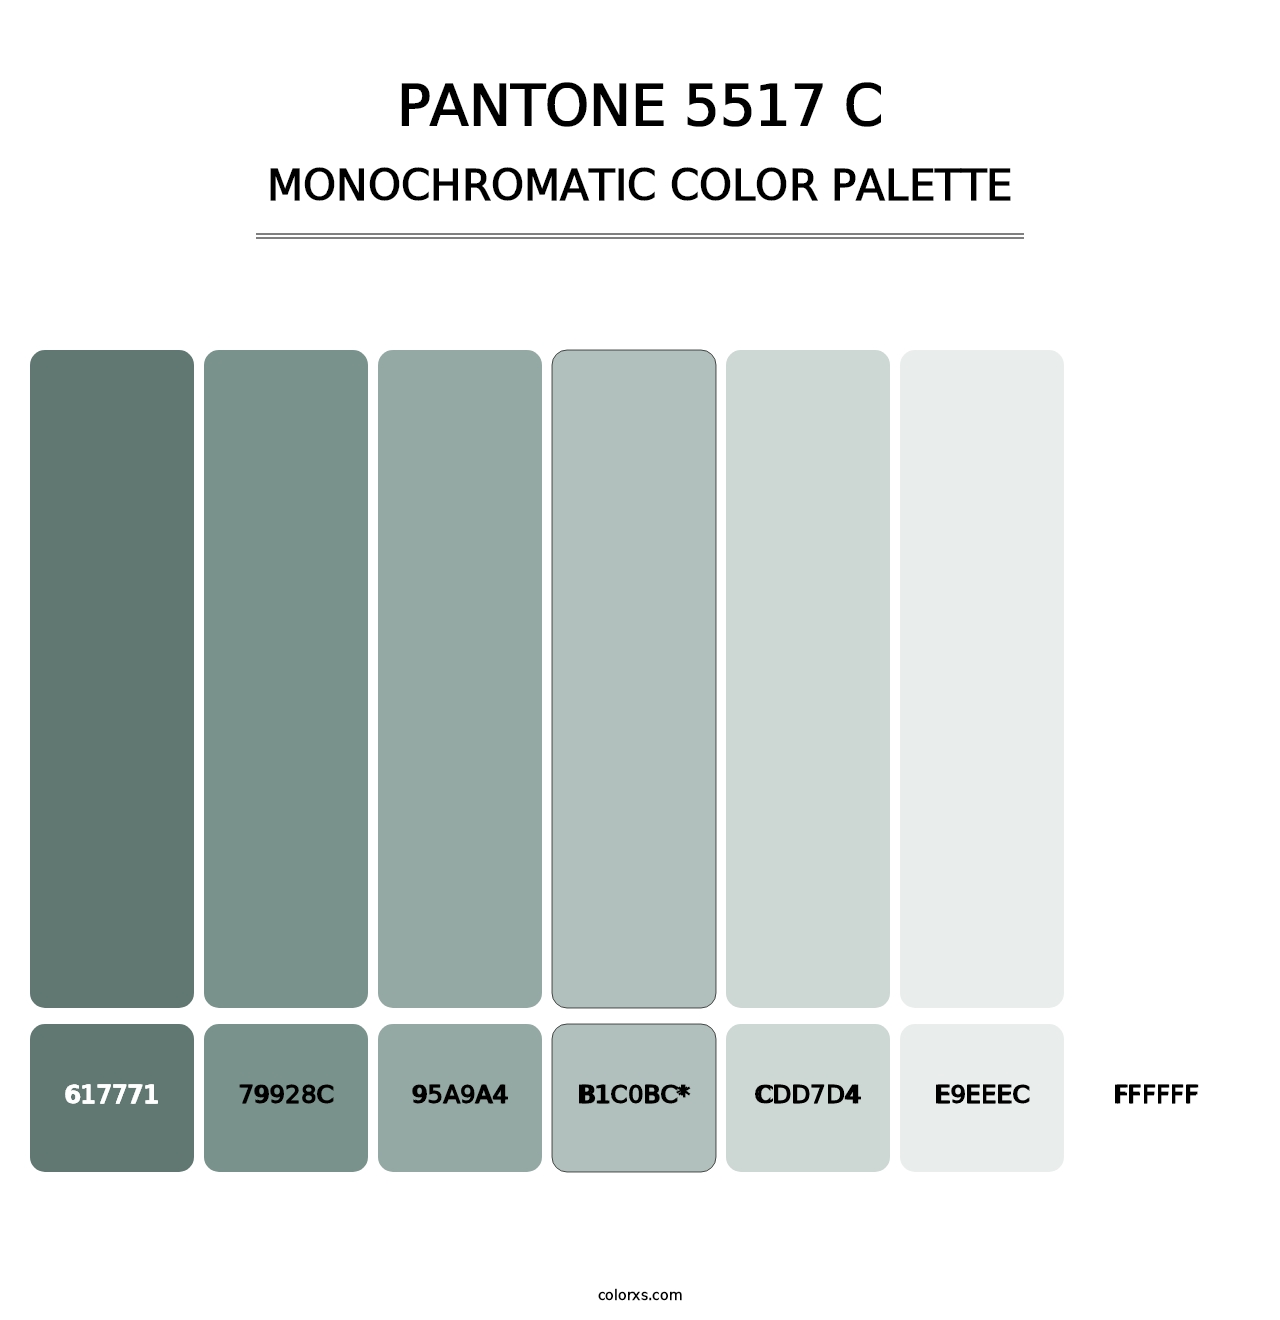 PANTONE 5517 C - Monochromatic Color Palette